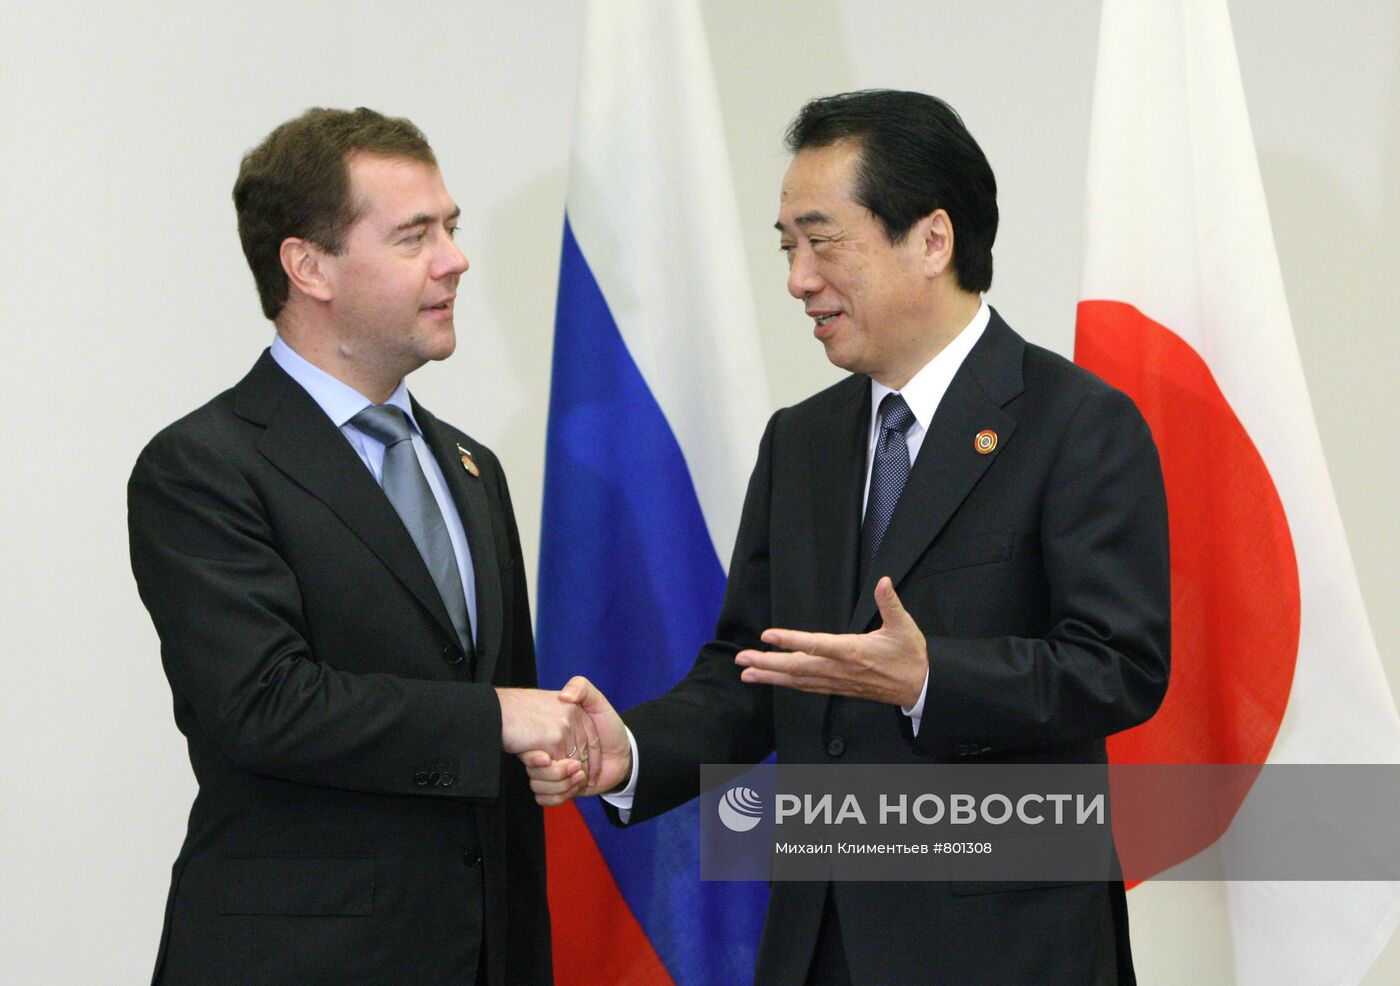 Д.Медведев прибыл на саммит АТЭС в Японию